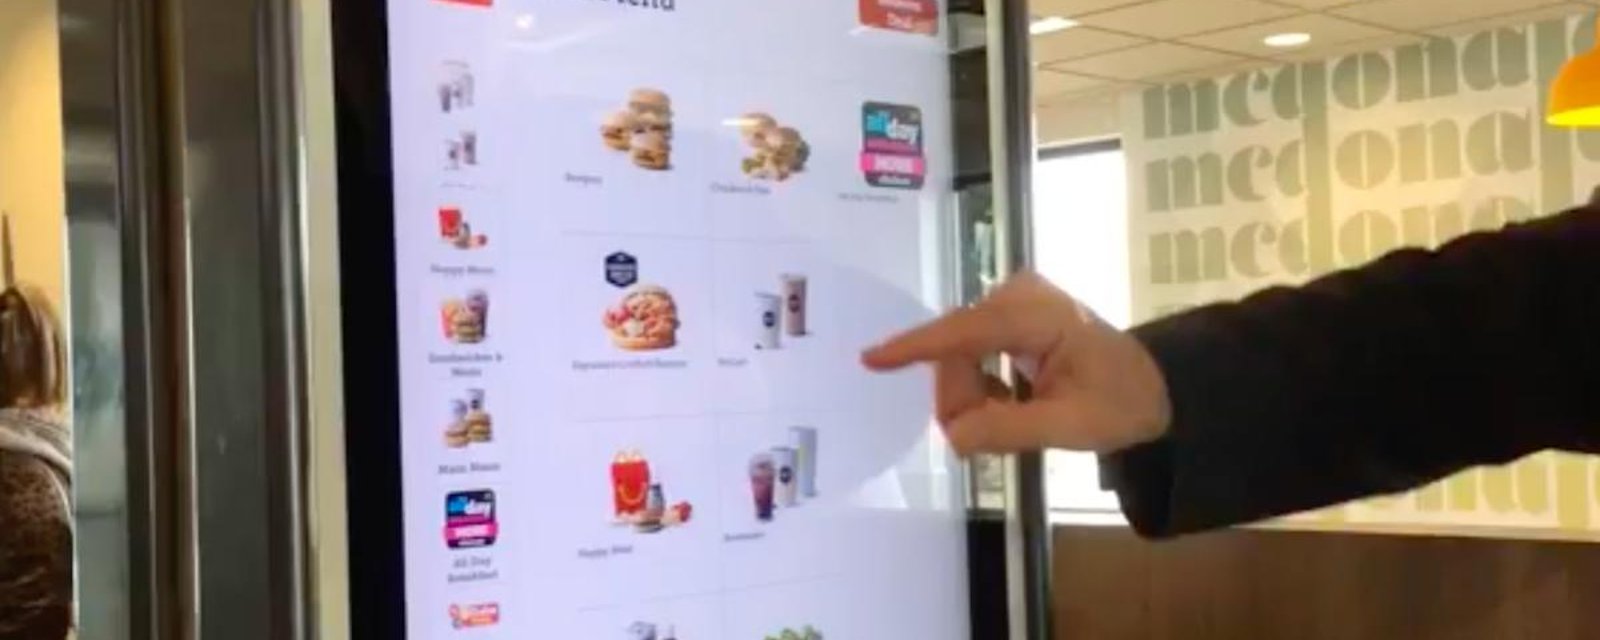 Une enquête révèle la présence d’excréments sur les écrans tactiles des restaurants Mc Donald.